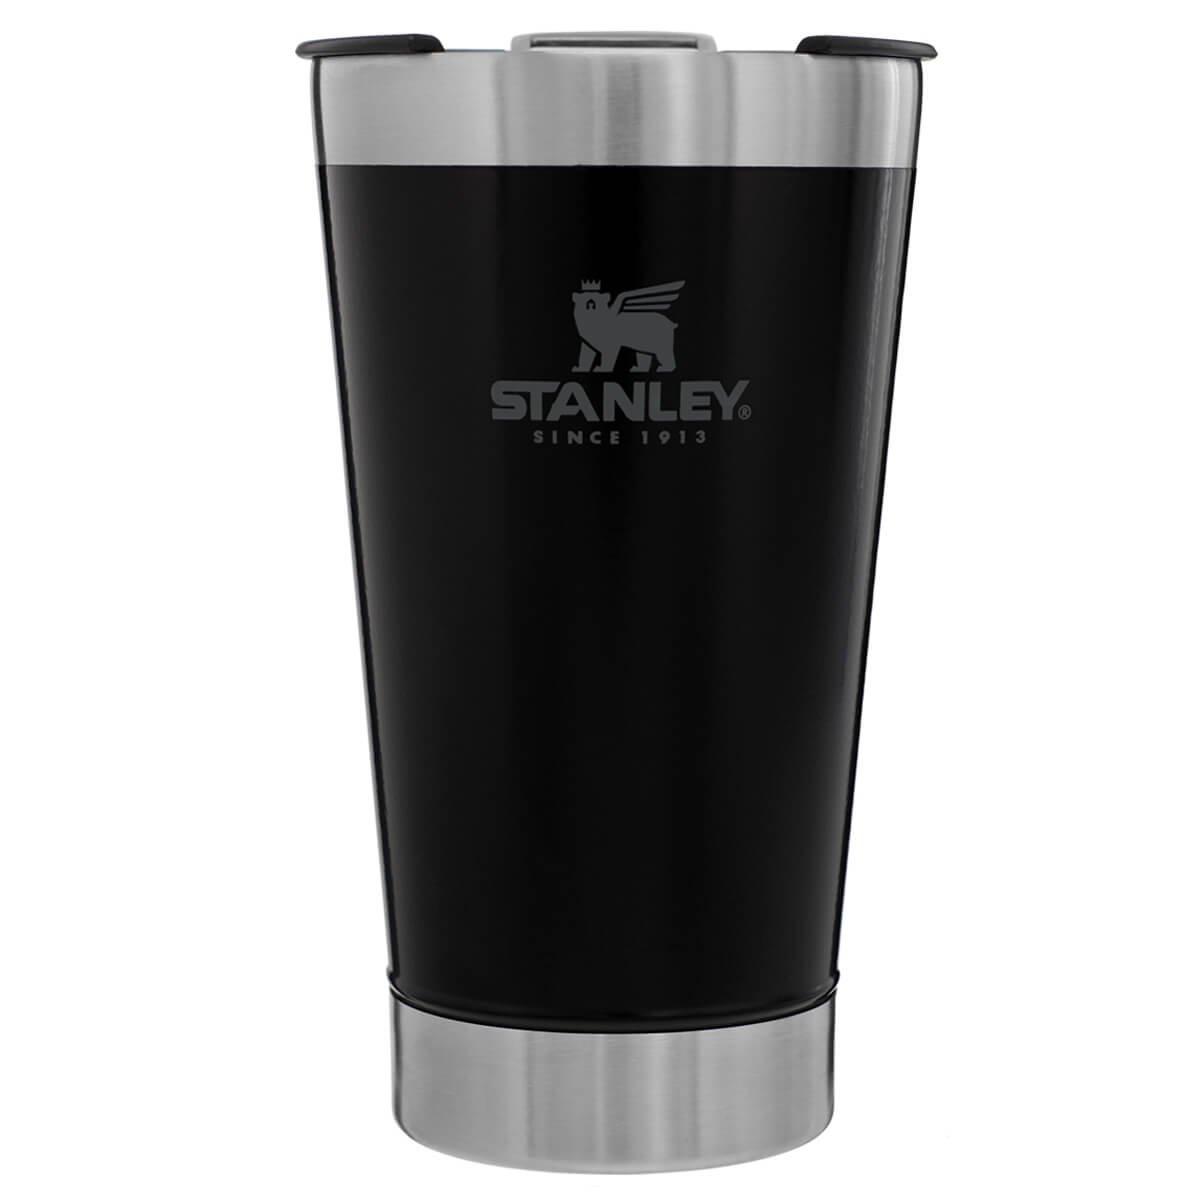 Copo Térmico Stanley para Cerveja ou Café com Tampa e Abridor Aço Inox Preto - 1